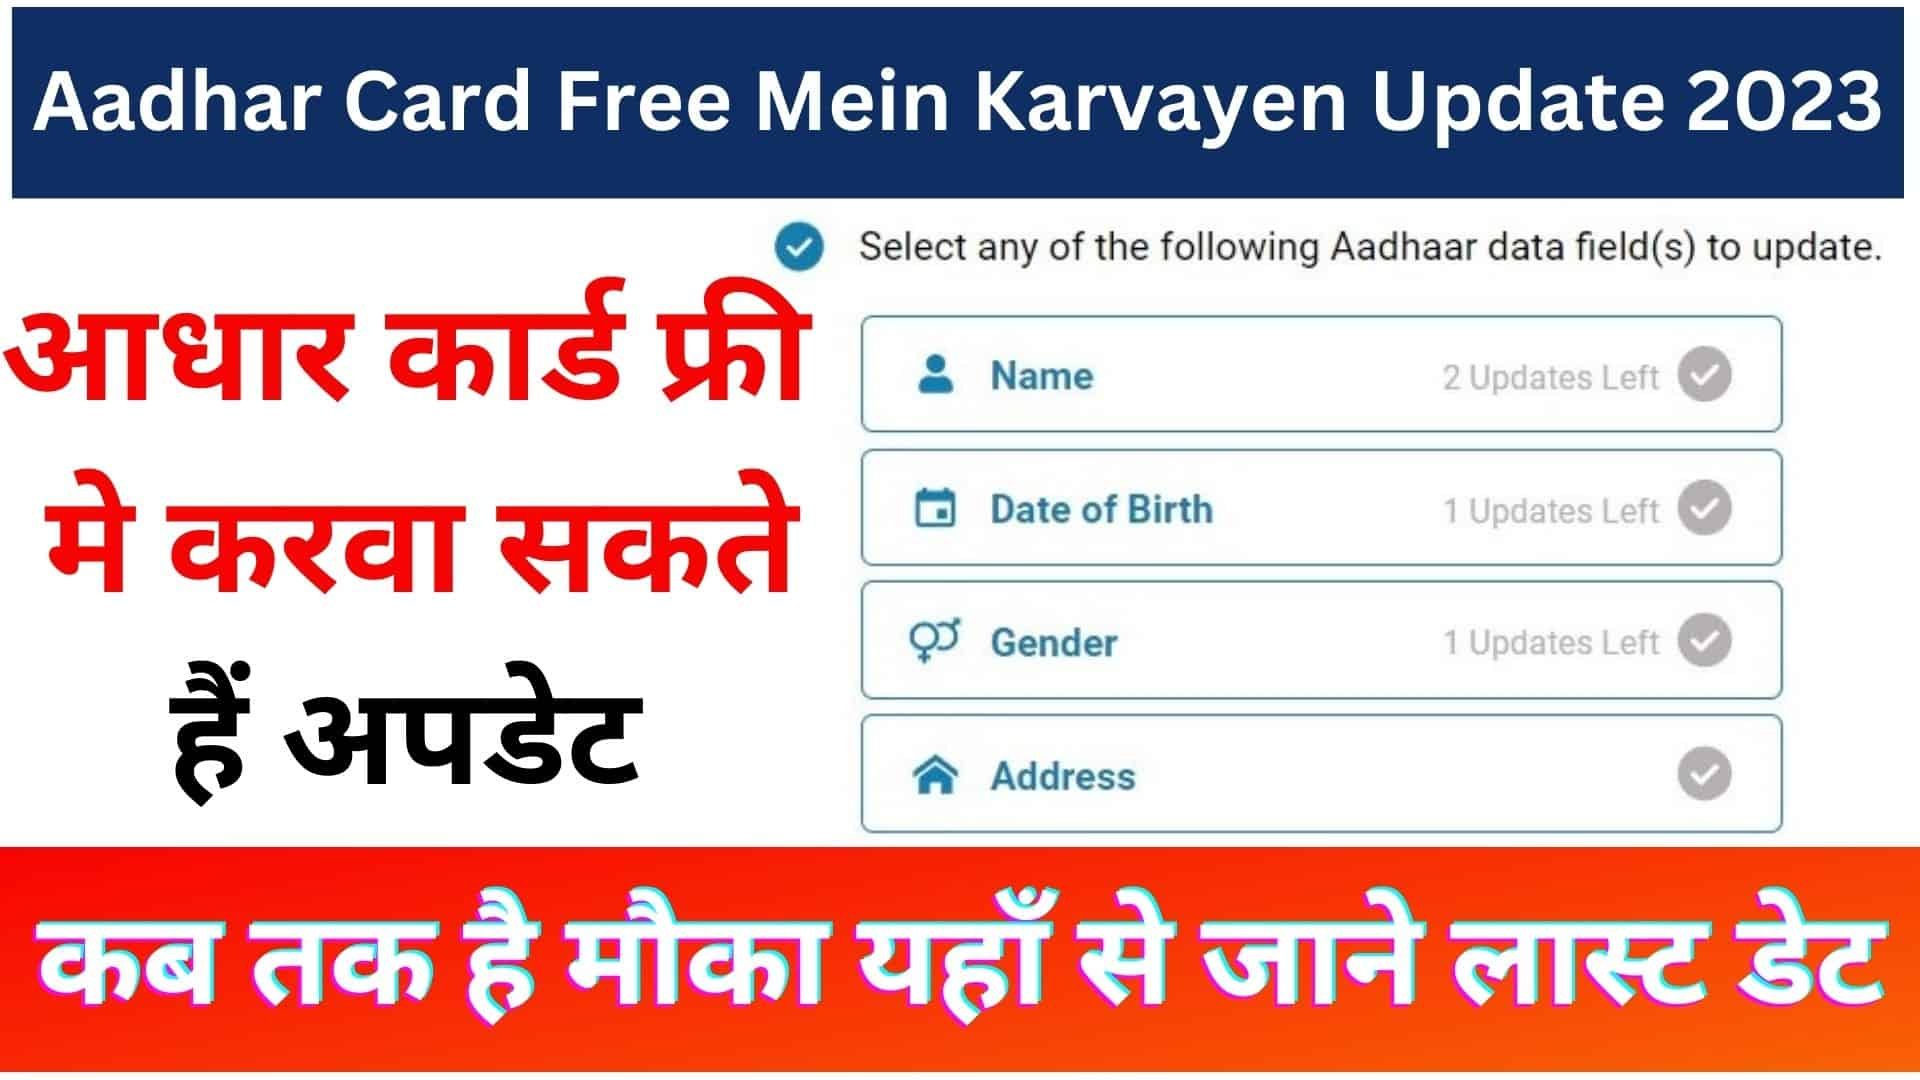 Aadhar Card Free Mein Karvayen Update 2023 : अब यहां से आधार कार्ड फ्री मे करवा सकते हैं अपडेट कब तक है मौका जाने लास्ट डेट